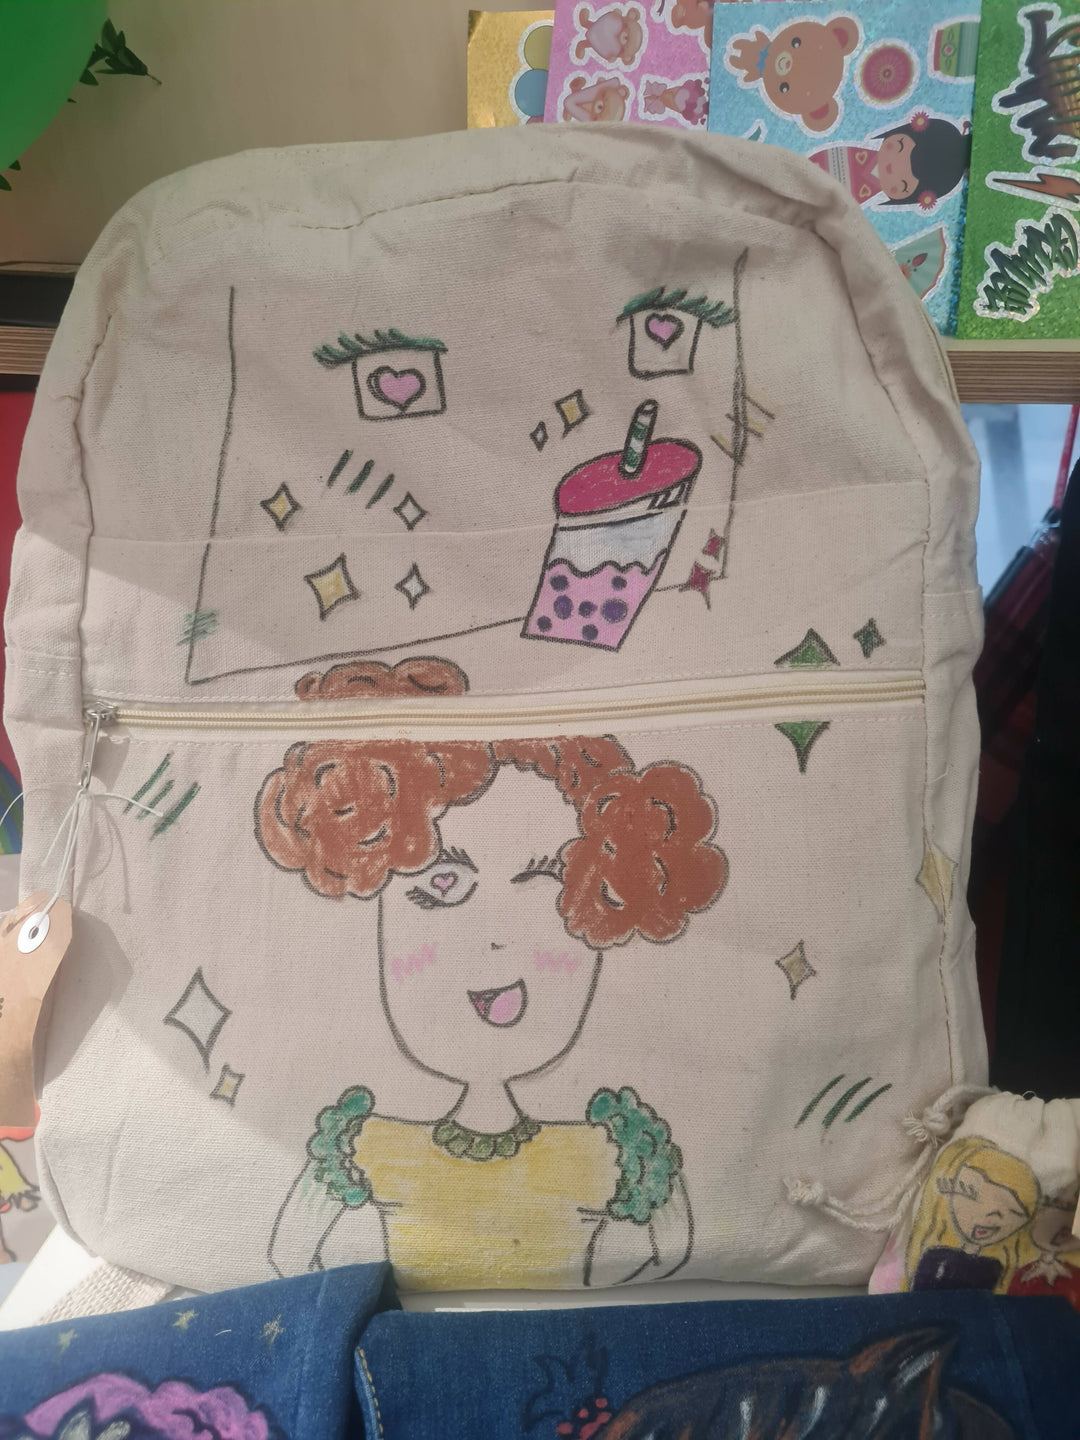 7 year old artist merchandise